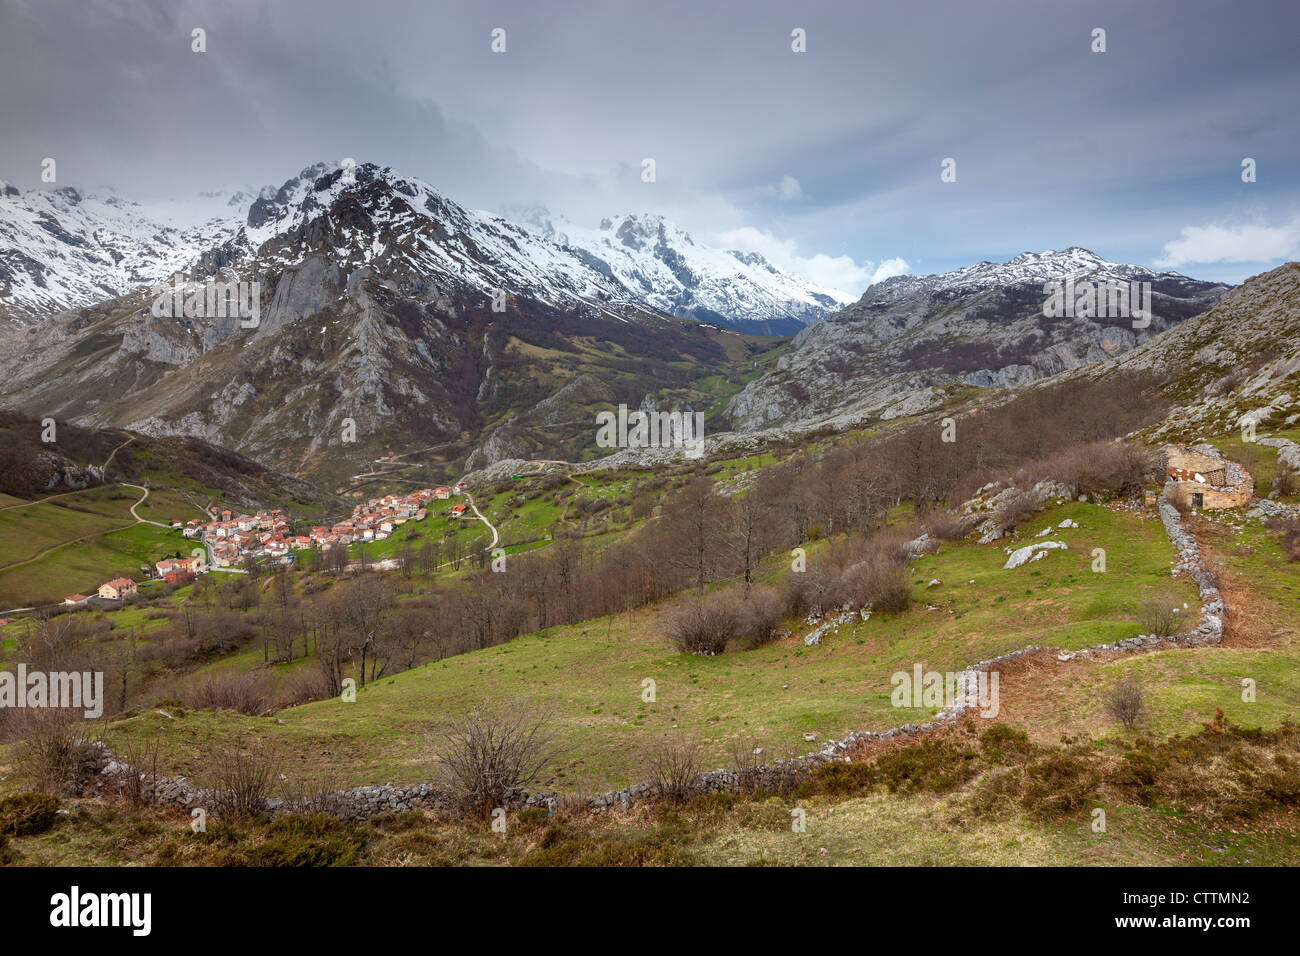 Sotres from Invernales de La Caballa, Picos de Europa, Asturian municipality of Cabrales, Spain Stock Photo